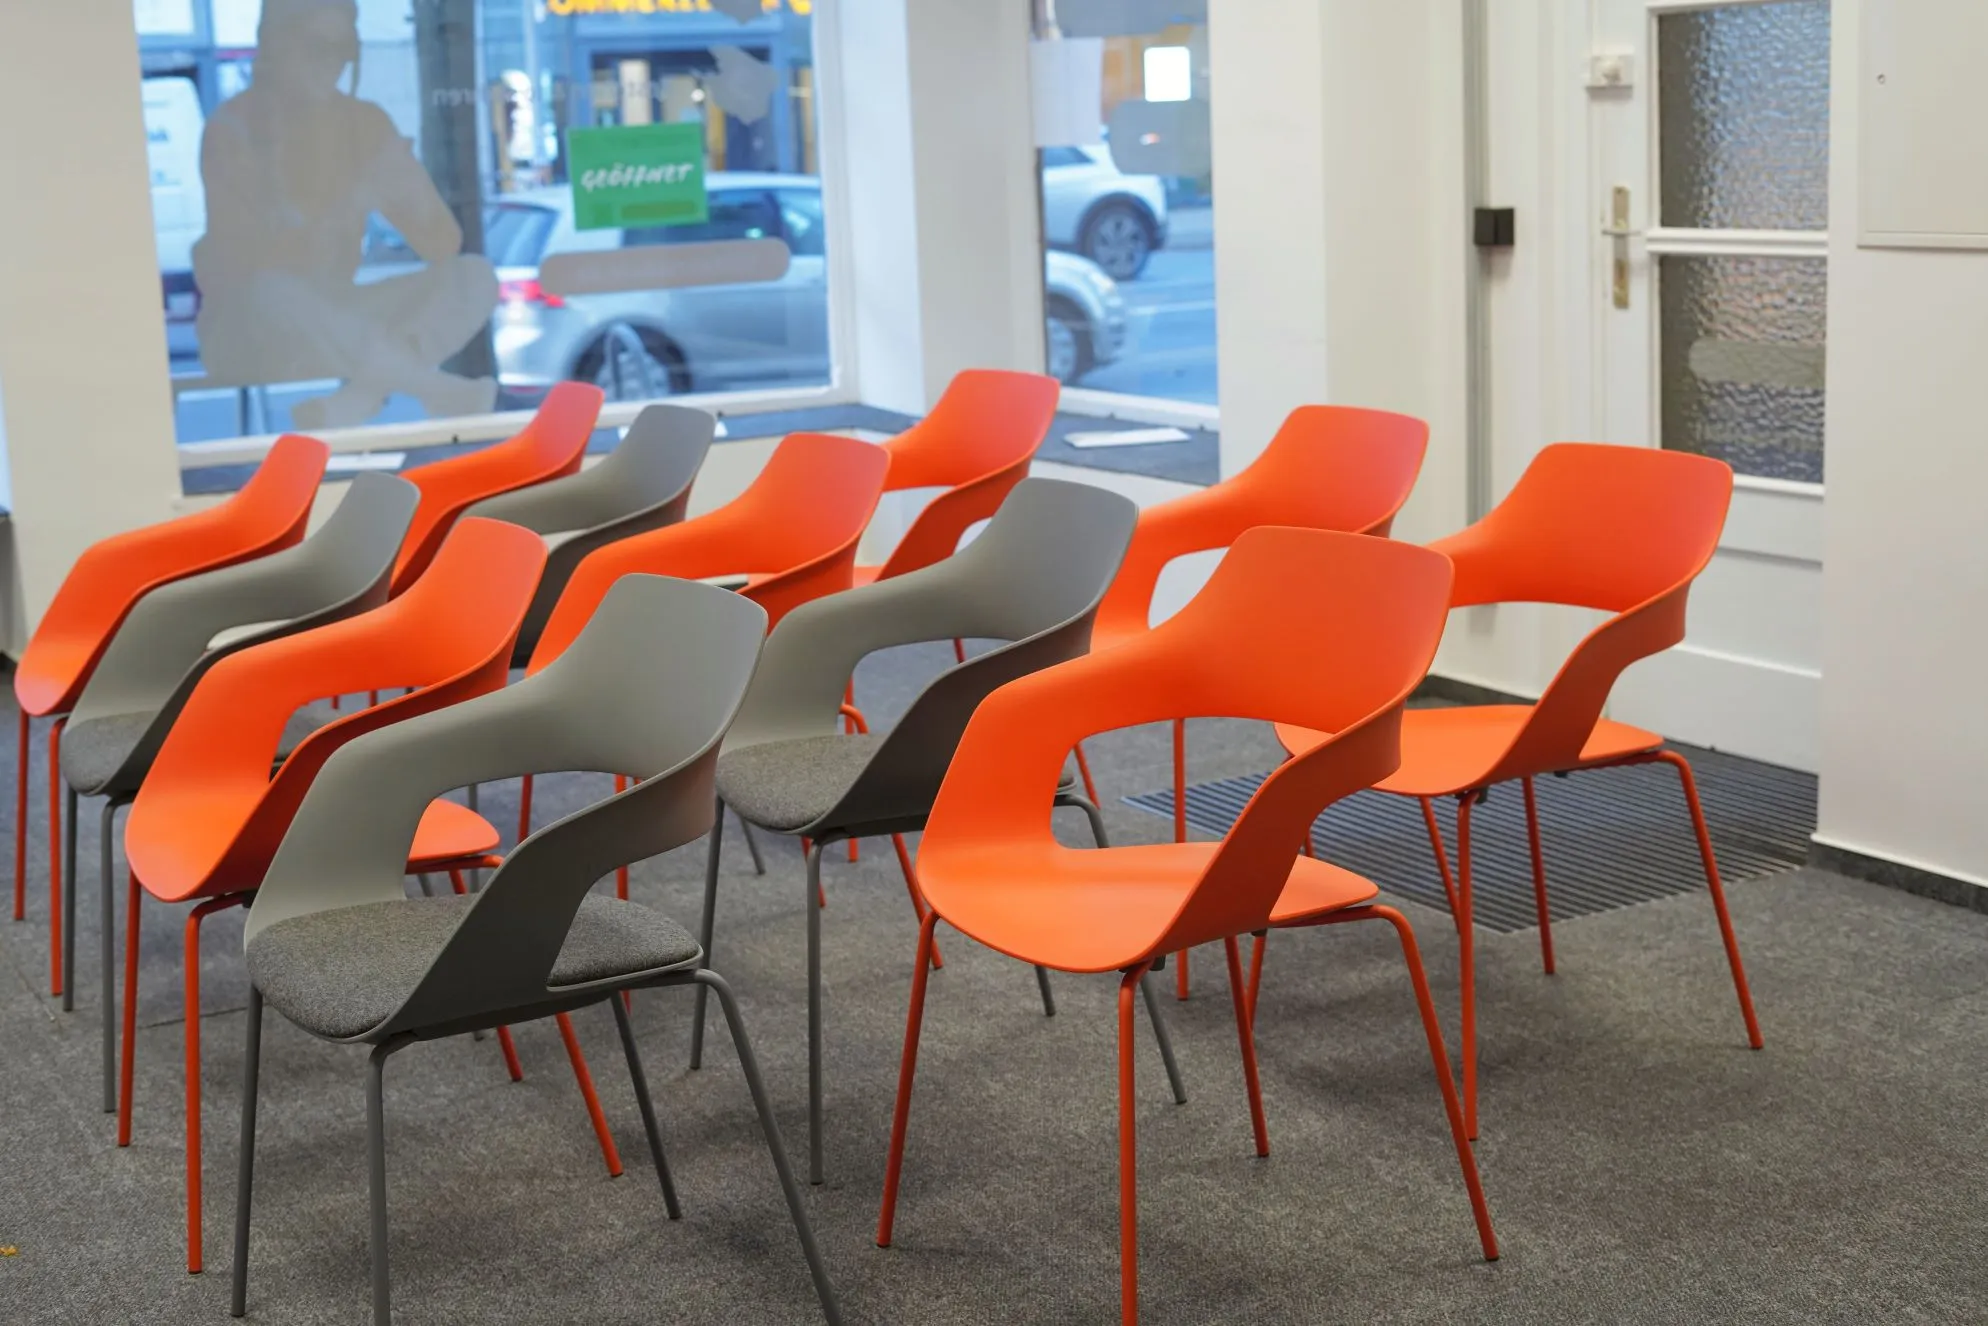 Stühle in orange und grau in einem Unterrichtsraum einer Fahrschule